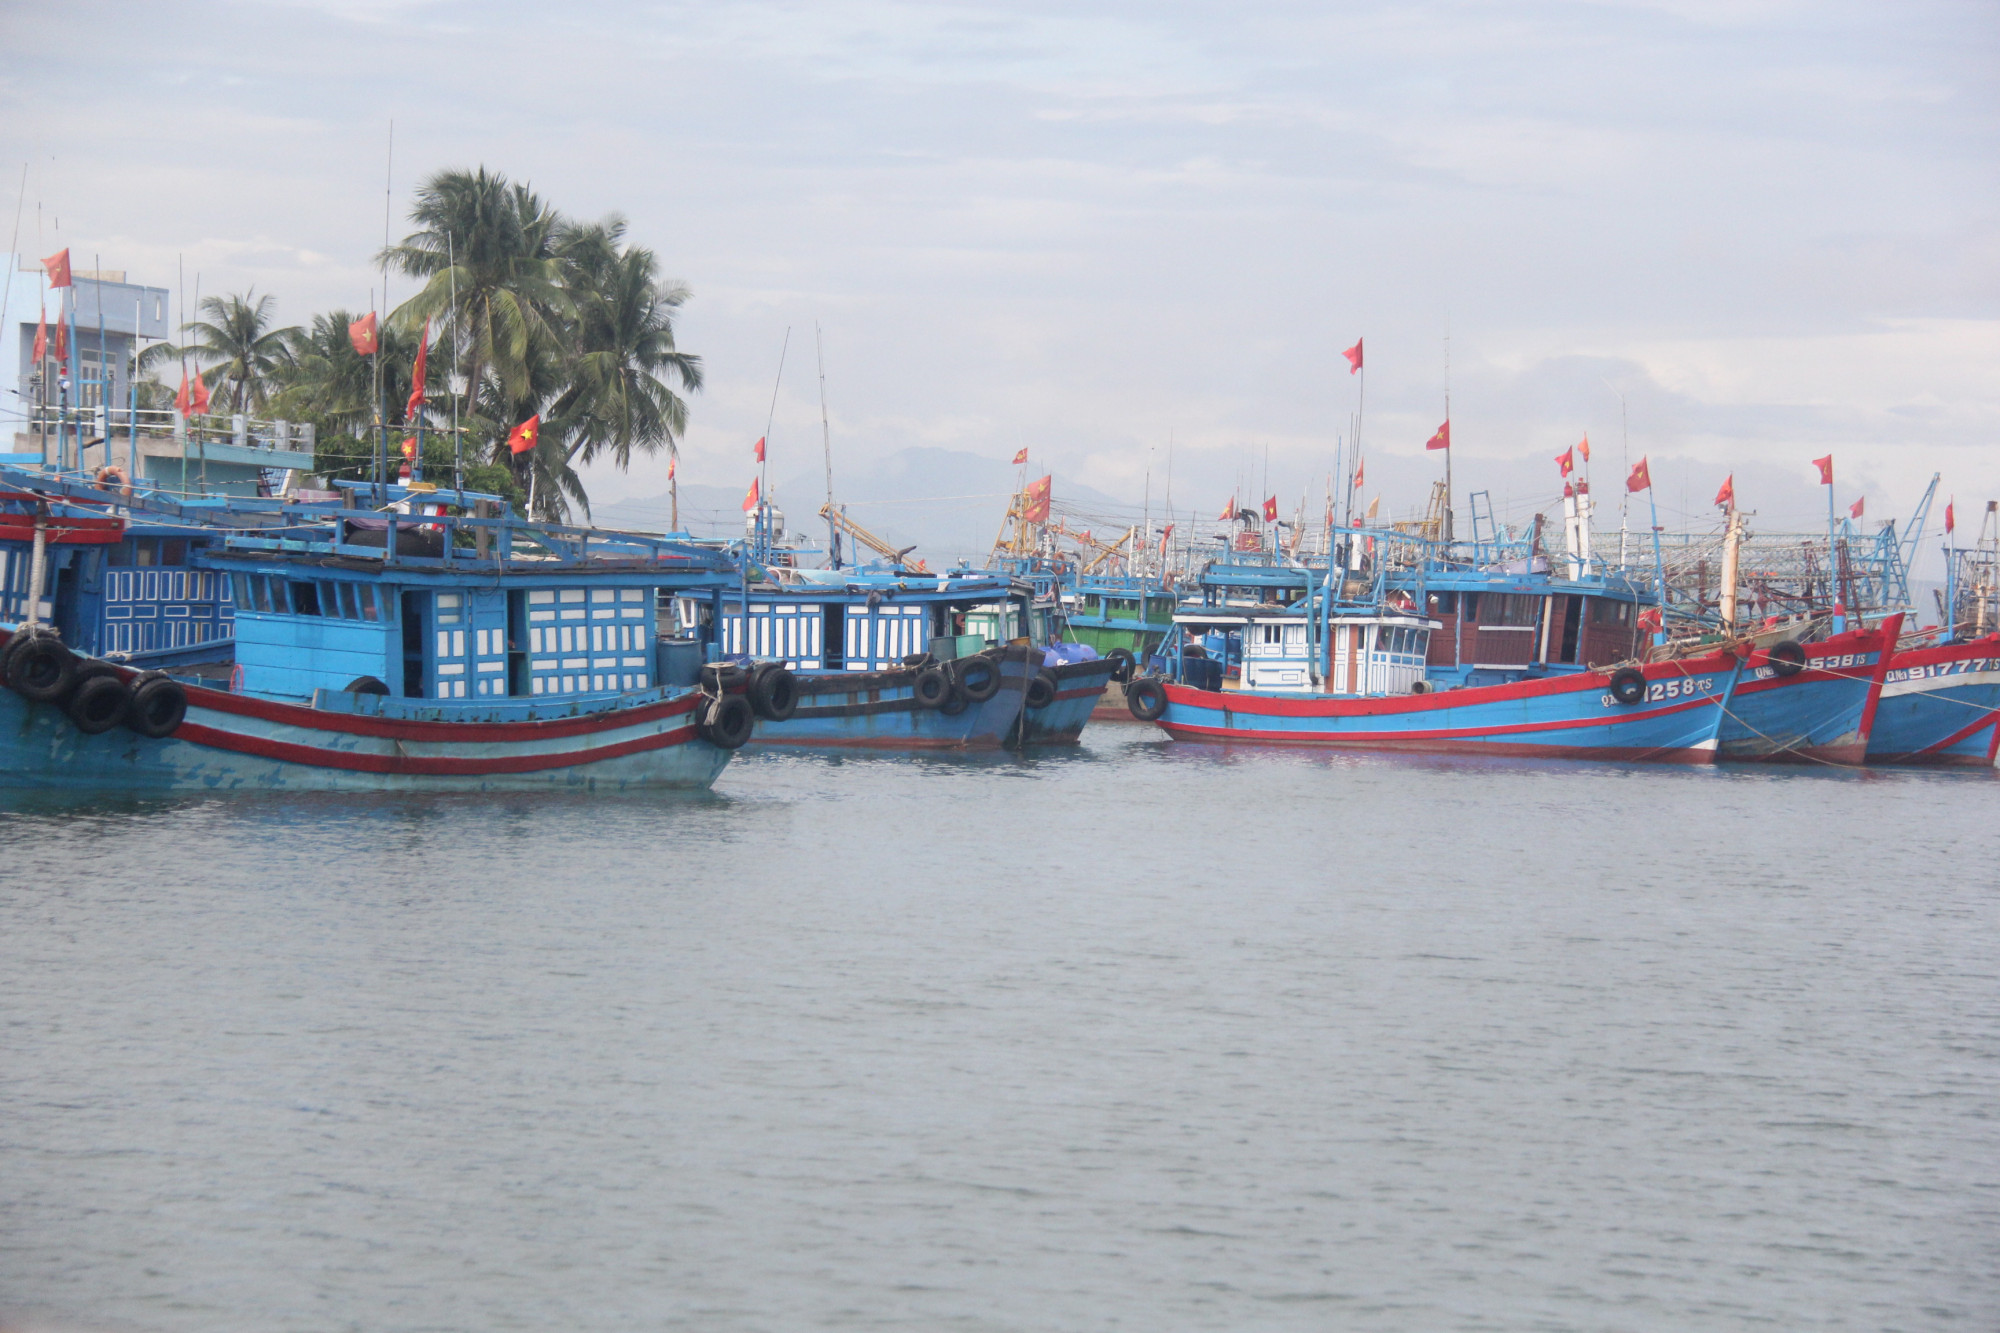 Theo điều tra ban đầu của Sở Nông nghiệp tỉnh Quảng Nam, khi bị cảnh sát biển Malaysia bắt giữ thì tàu cá của ngư dân Quảng Nam đang ở trên lãnh hải Việt Nam